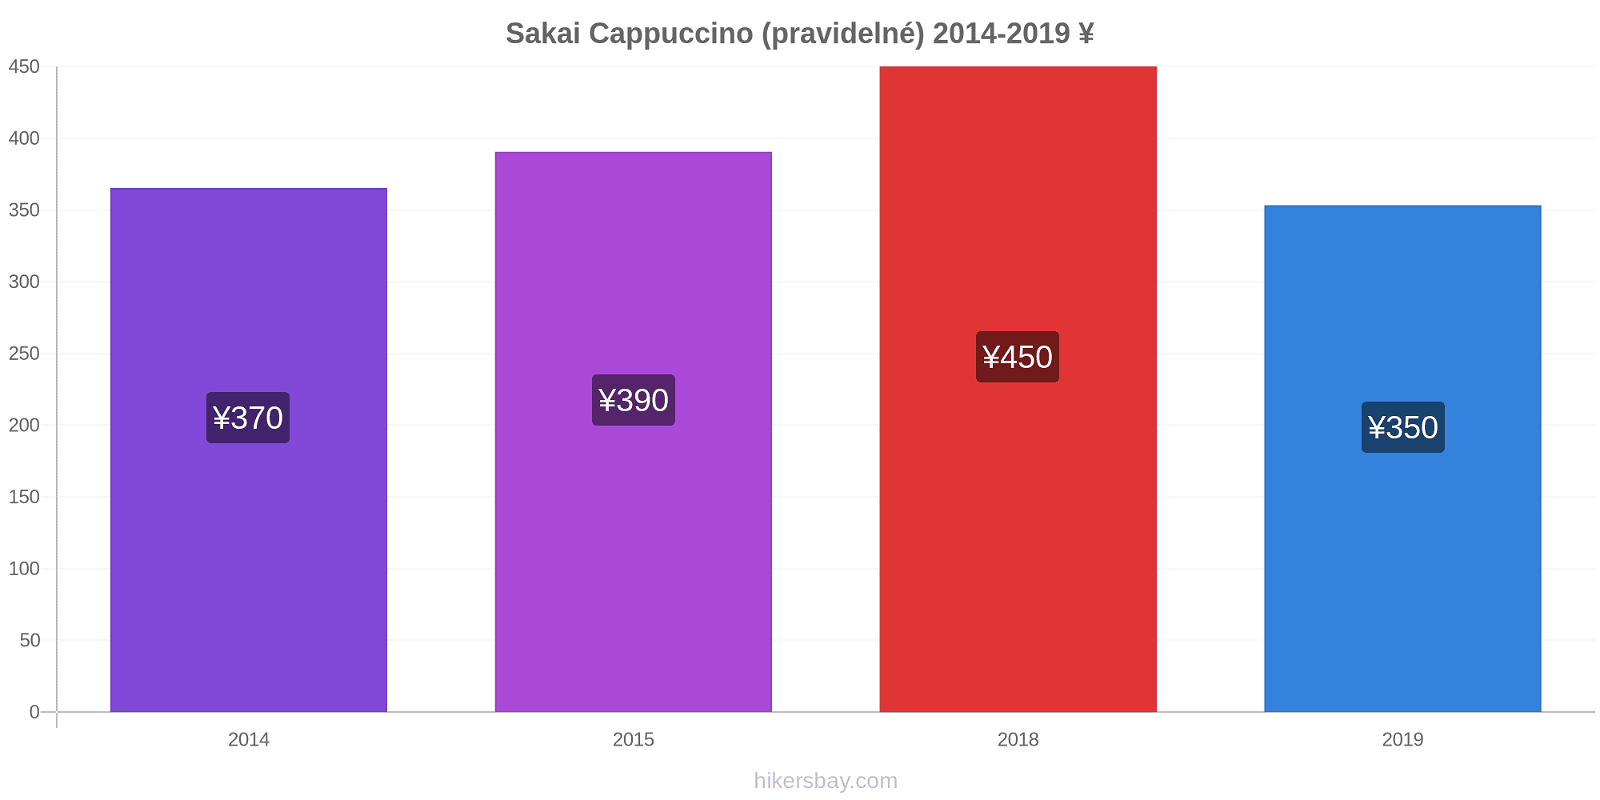 Sakai změny cen Cappuccino (pravidelné) hikersbay.com